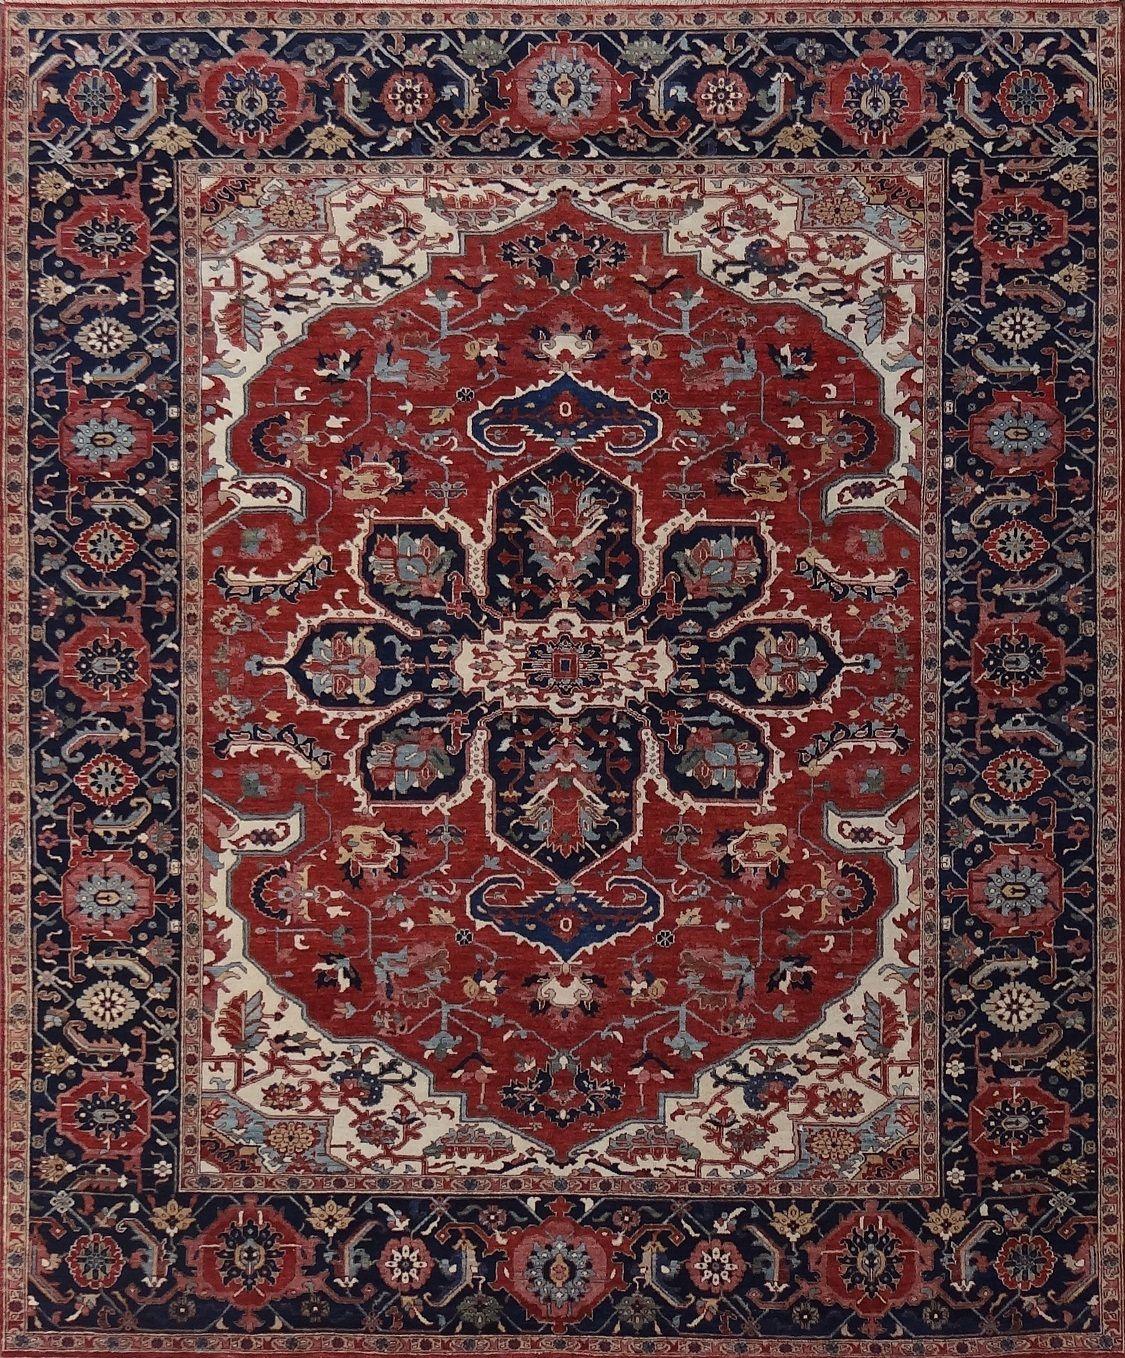 Schöner neuer Teppich mit schönem persischen Design und schönen Farben, komplett handgeknüpft mit Wolle und Seidensamt auf Baumwollbasis.